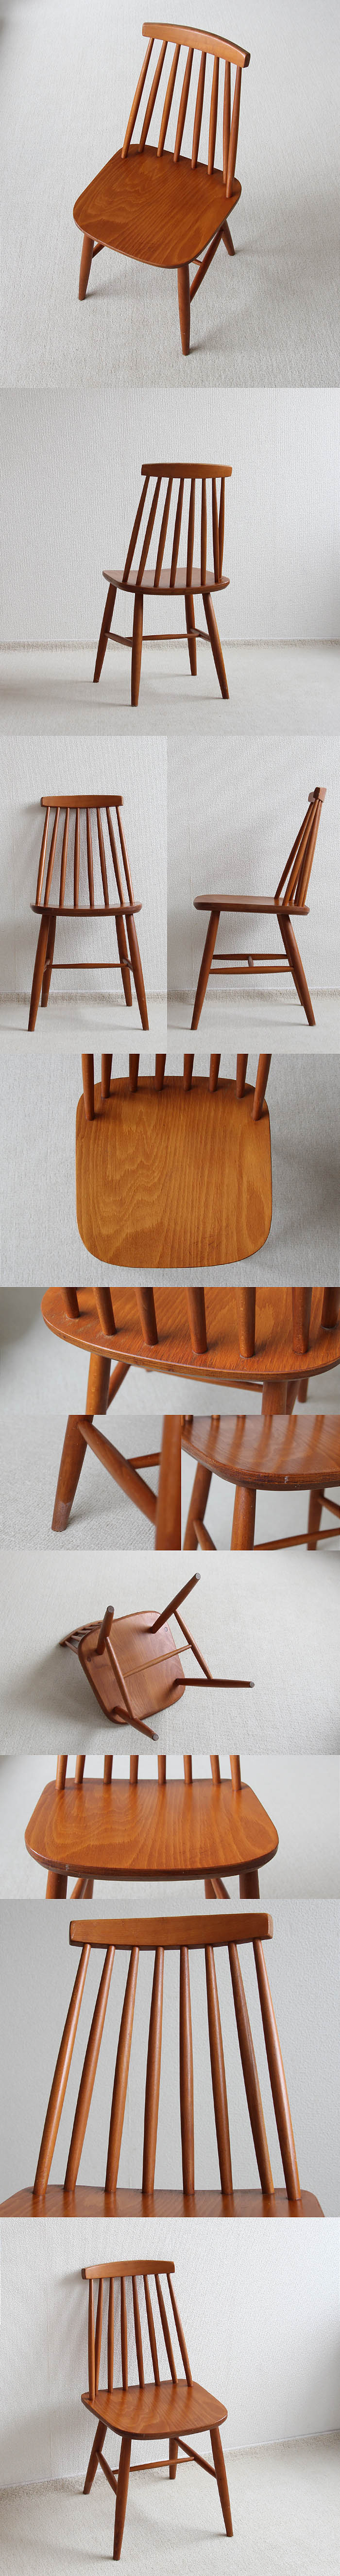 イギリス ビンテージ ダイニングチェア ウィンザーチェア 木製椅子 北欧 家具 V-264